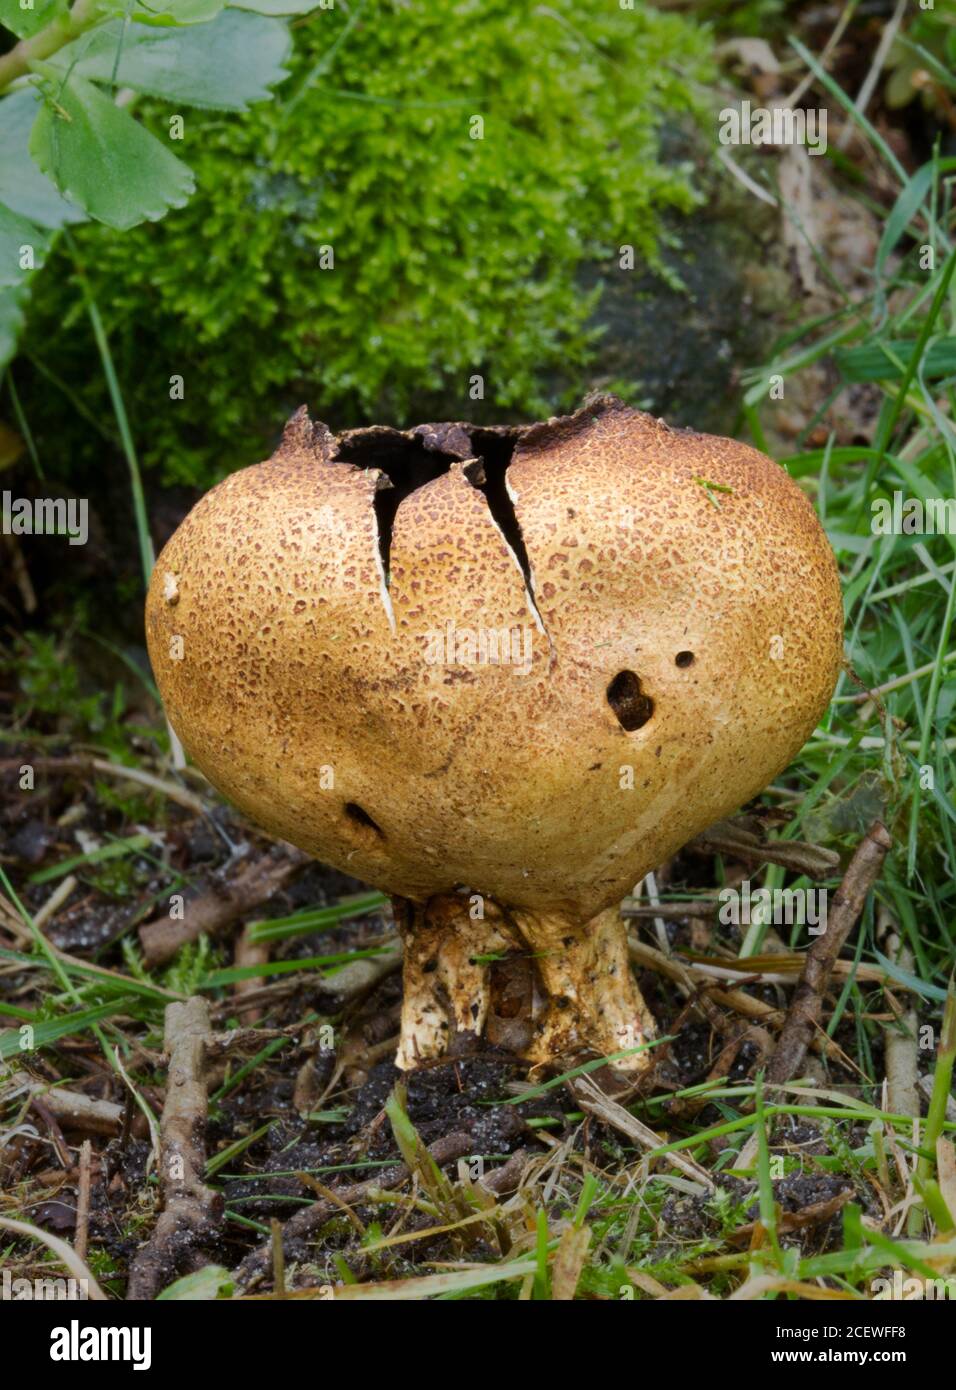 Primer plano de una bola de tierra escamosa, Scleroderma verrucosum, un hongo de bola de tierra Foto de stock